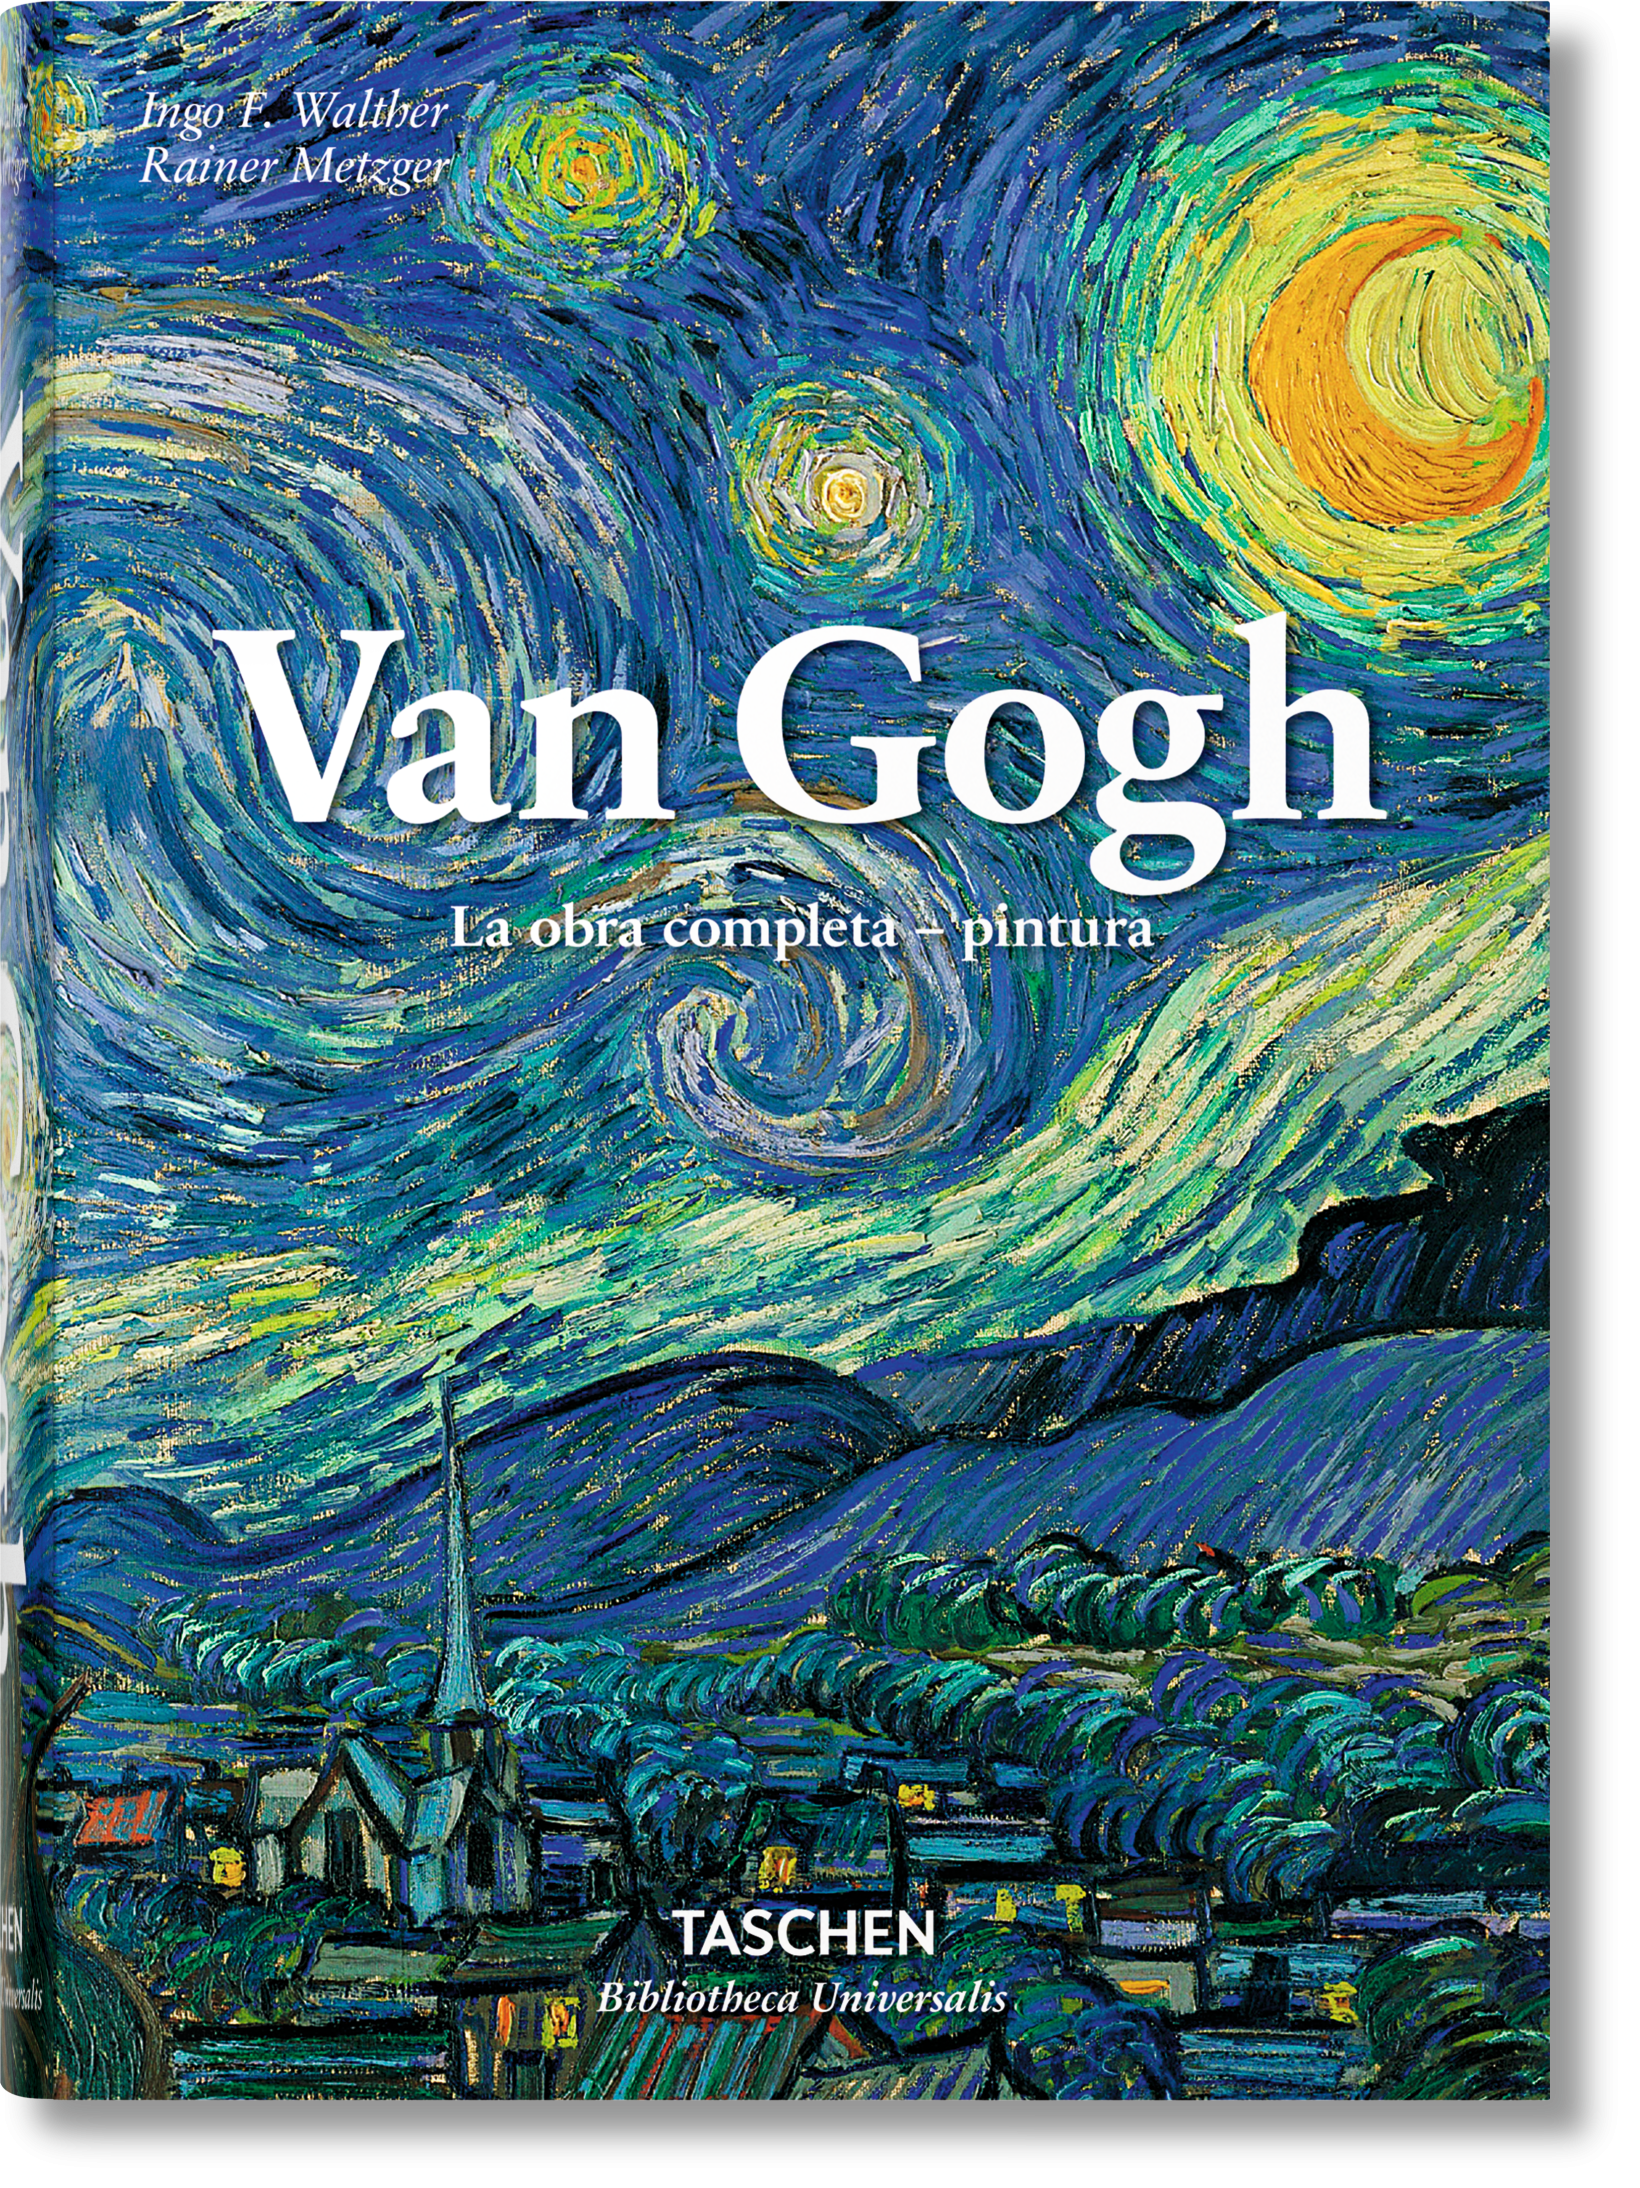 TASCHEN Books: Vincent van Gogh